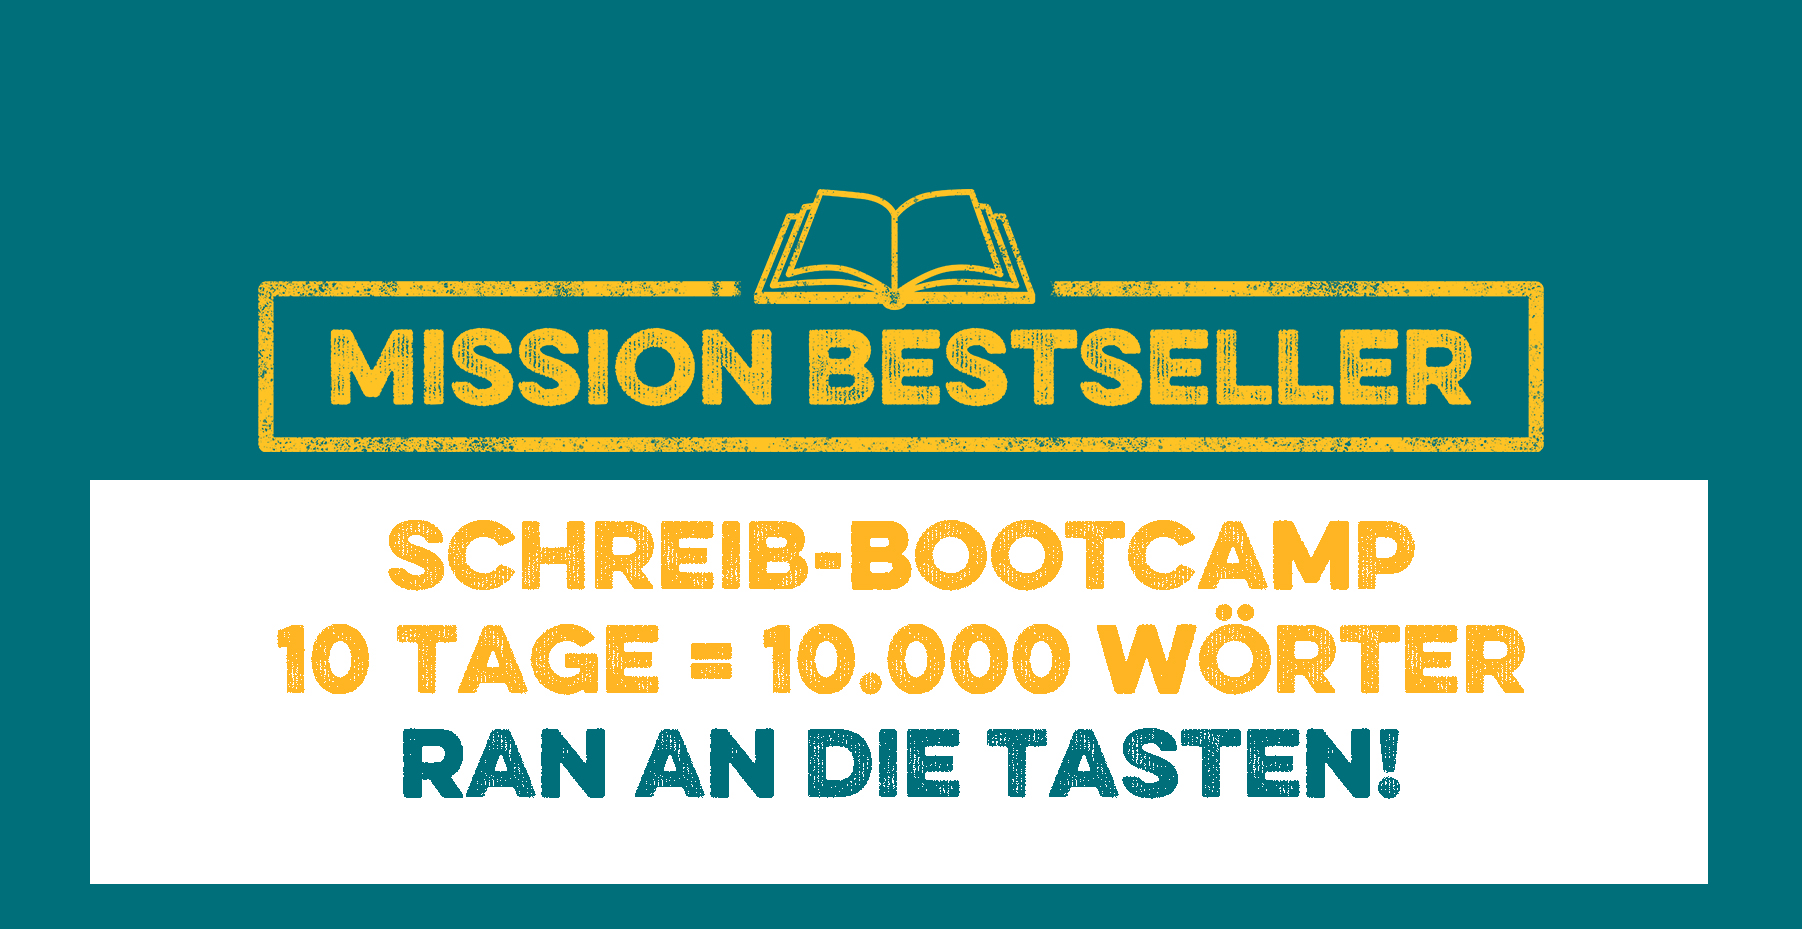 Mission Bestseller Online Schreib-Bootcamp - Schrift und Logo in Gold und Petrol